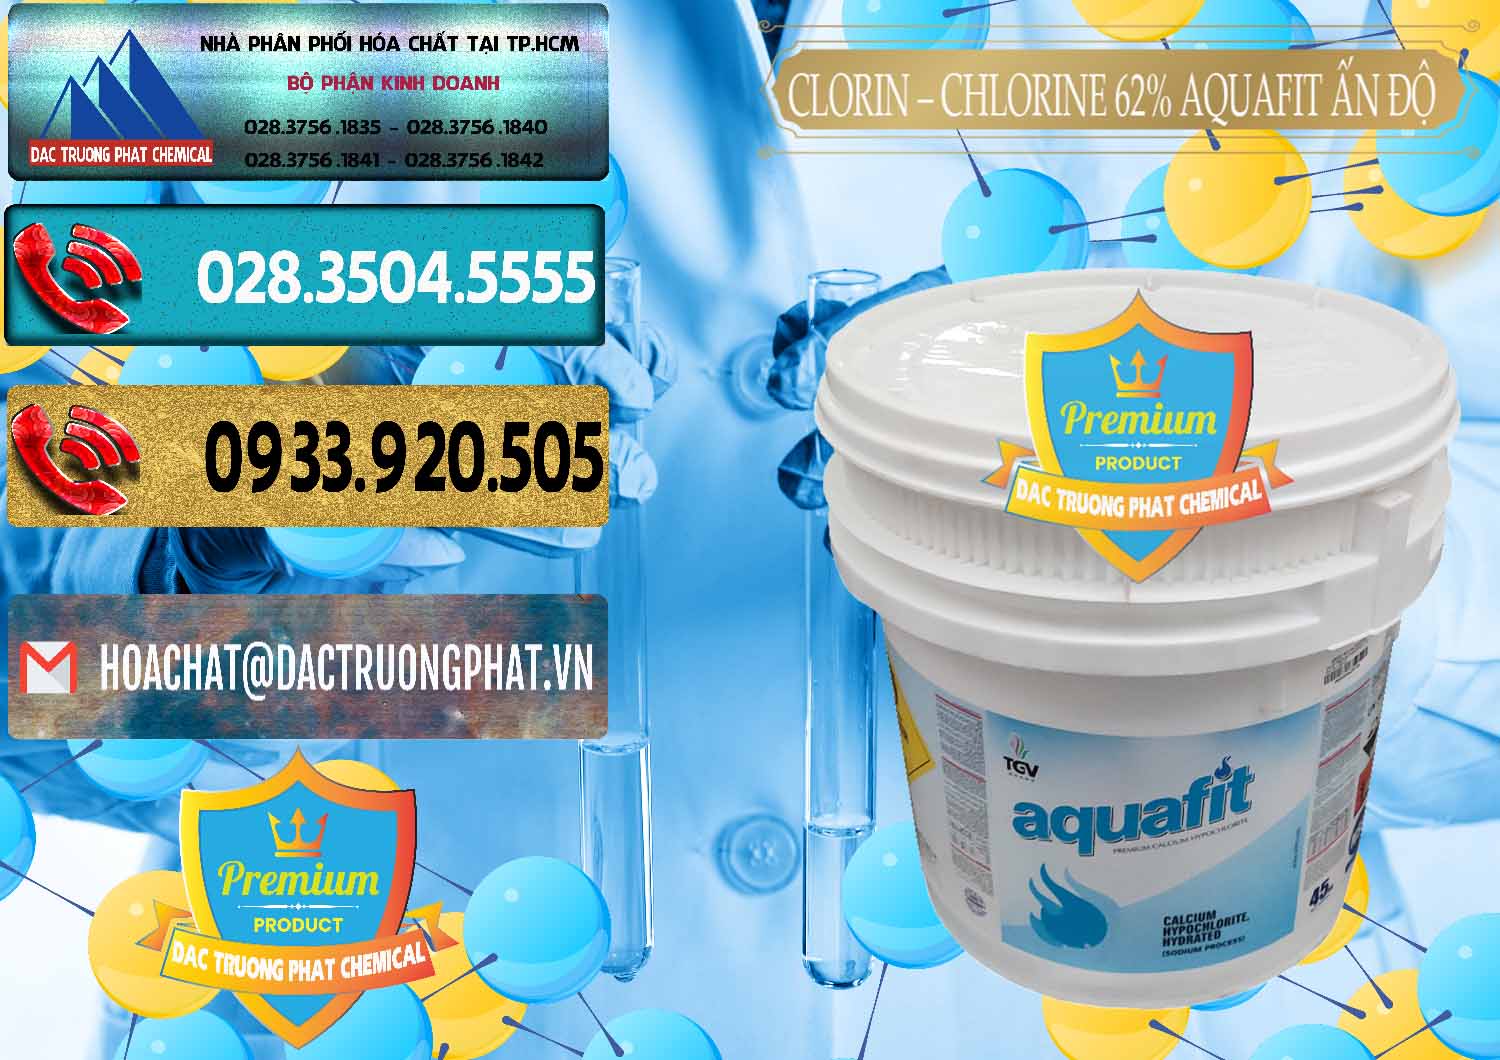 Nơi chuyên cung cấp - bán Clorin - Chlorine 62% Aquafit Thùng Lùn Ấn Độ India - 0057 - Công ty cung cấp và kinh doanh hóa chất tại TP.HCM - hoachatdetnhuom.com